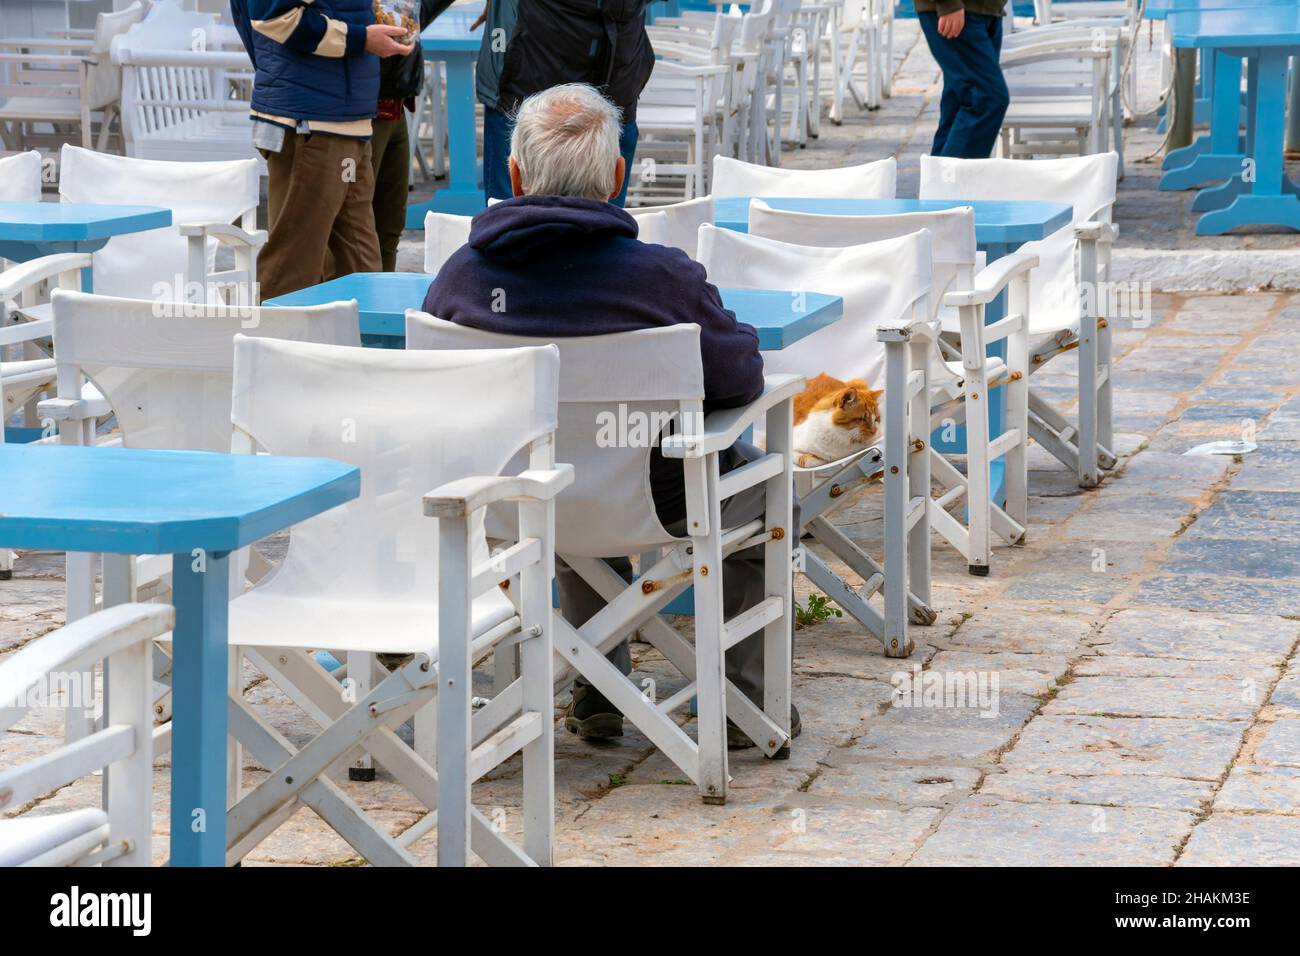 Un vecchio pescatore greco siede ad un tavolo di un caffè all'aperto con un gatto bianco e arancione sull'isola greca di Hydra, Grecia. Foto Stock